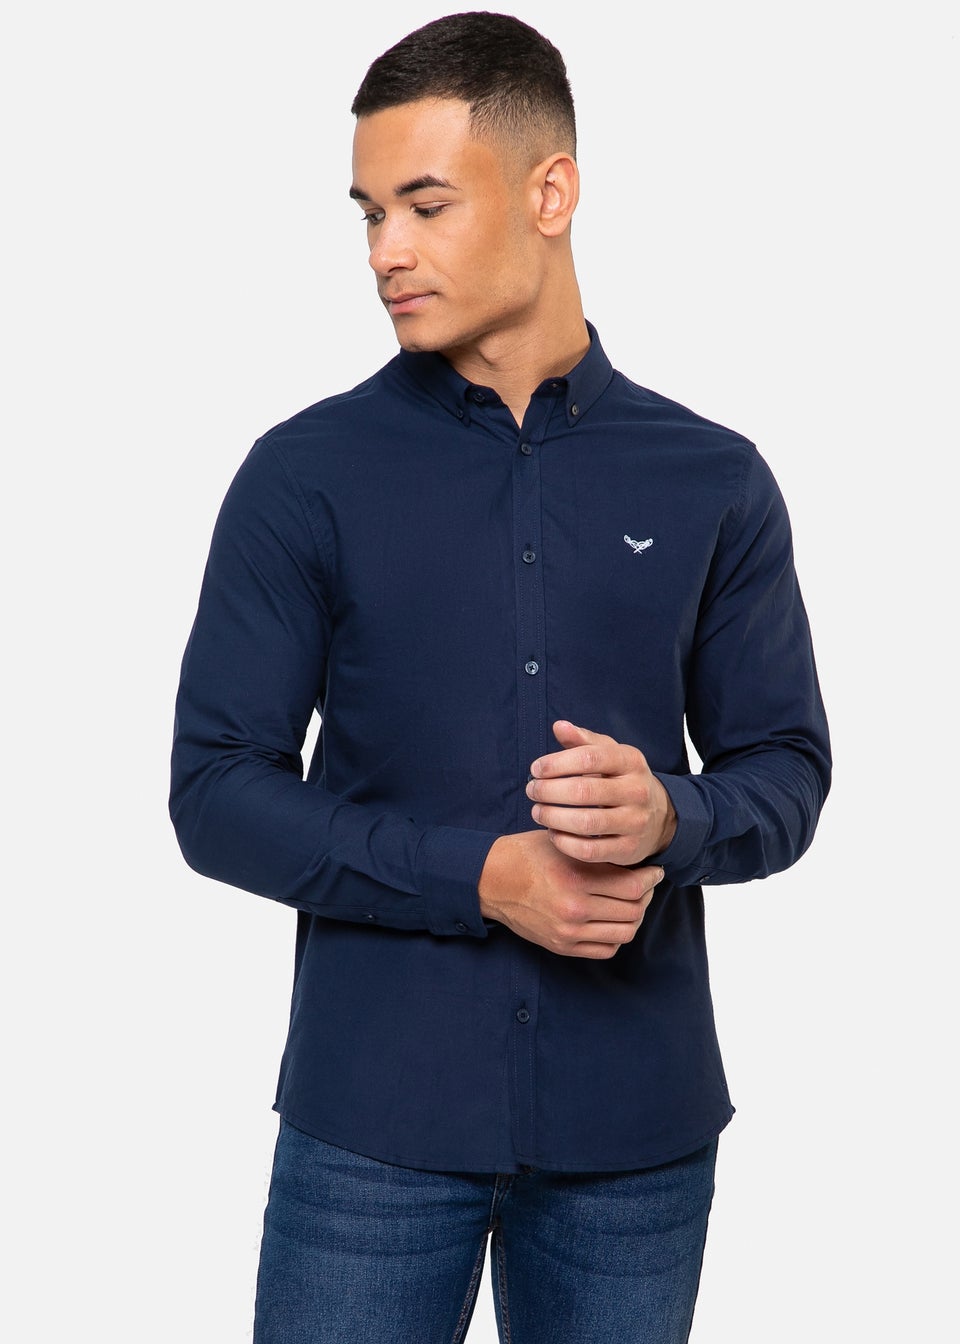 Threadbare Navy Oxford Cotton Beacon Long Sleeve Shirt